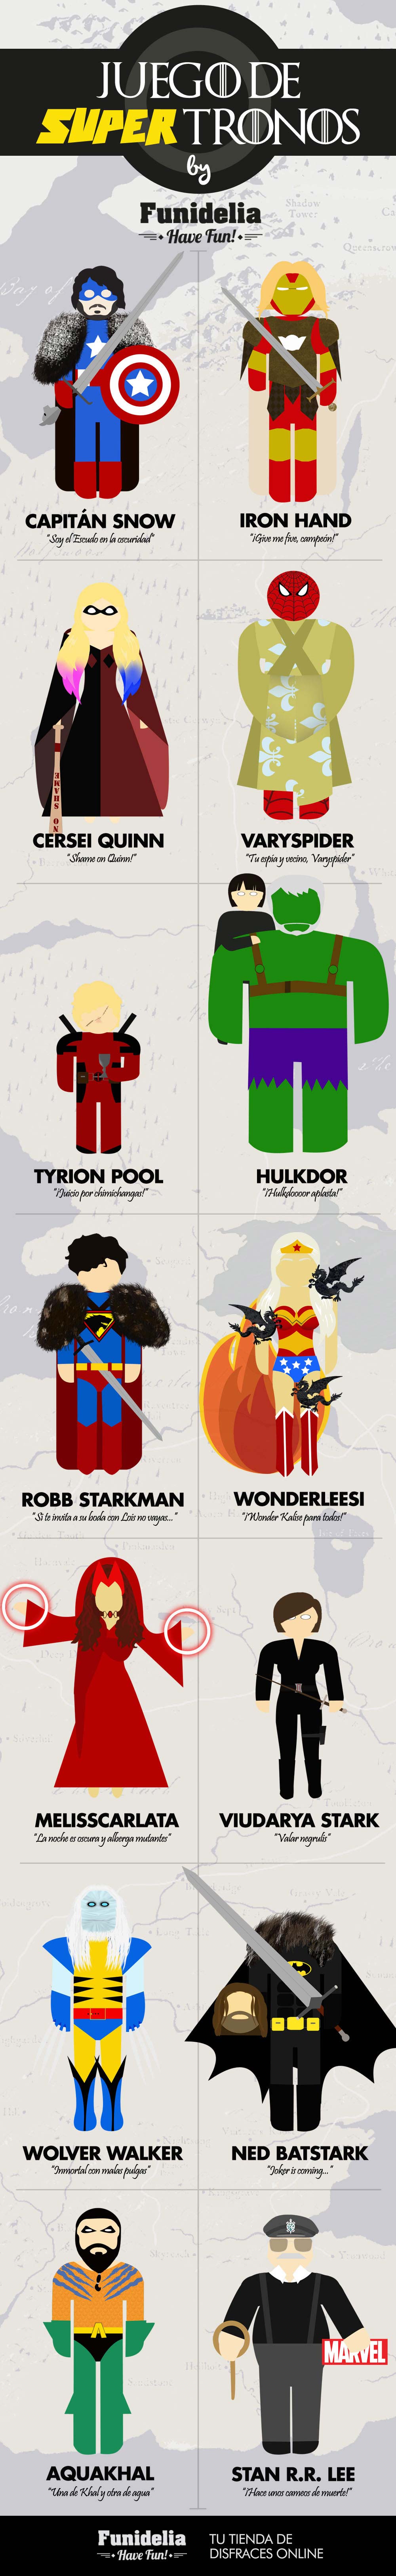 infografia-juego-super-tronos